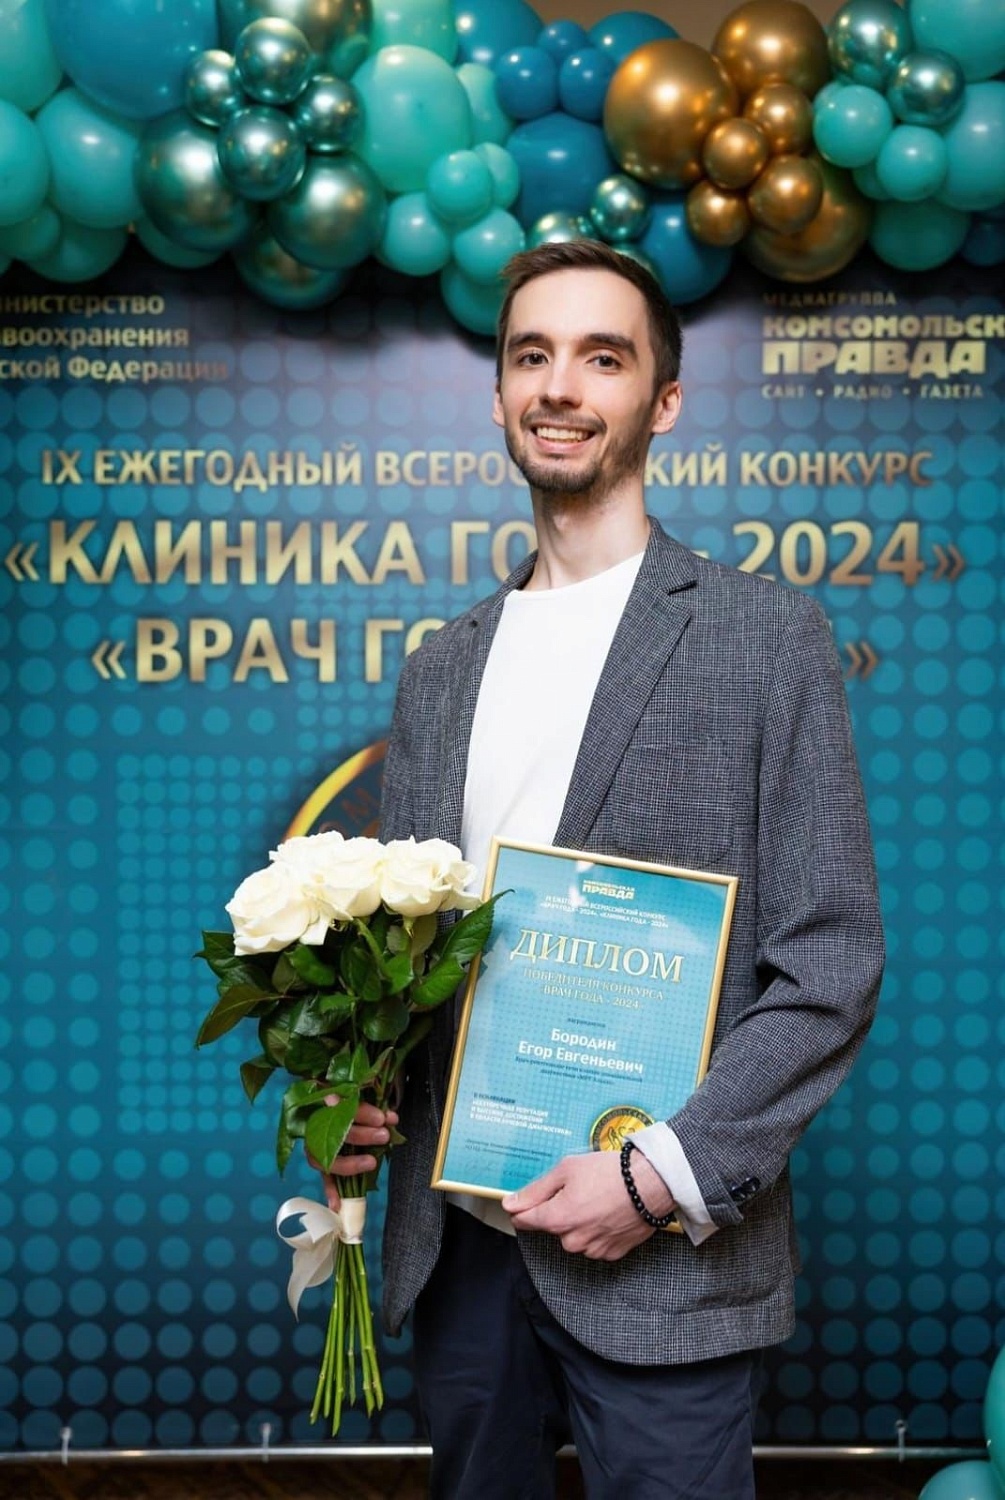 IX ежегодный Всероссийский конкурс «Врач года - 2024» и «Клиника года - 2024»